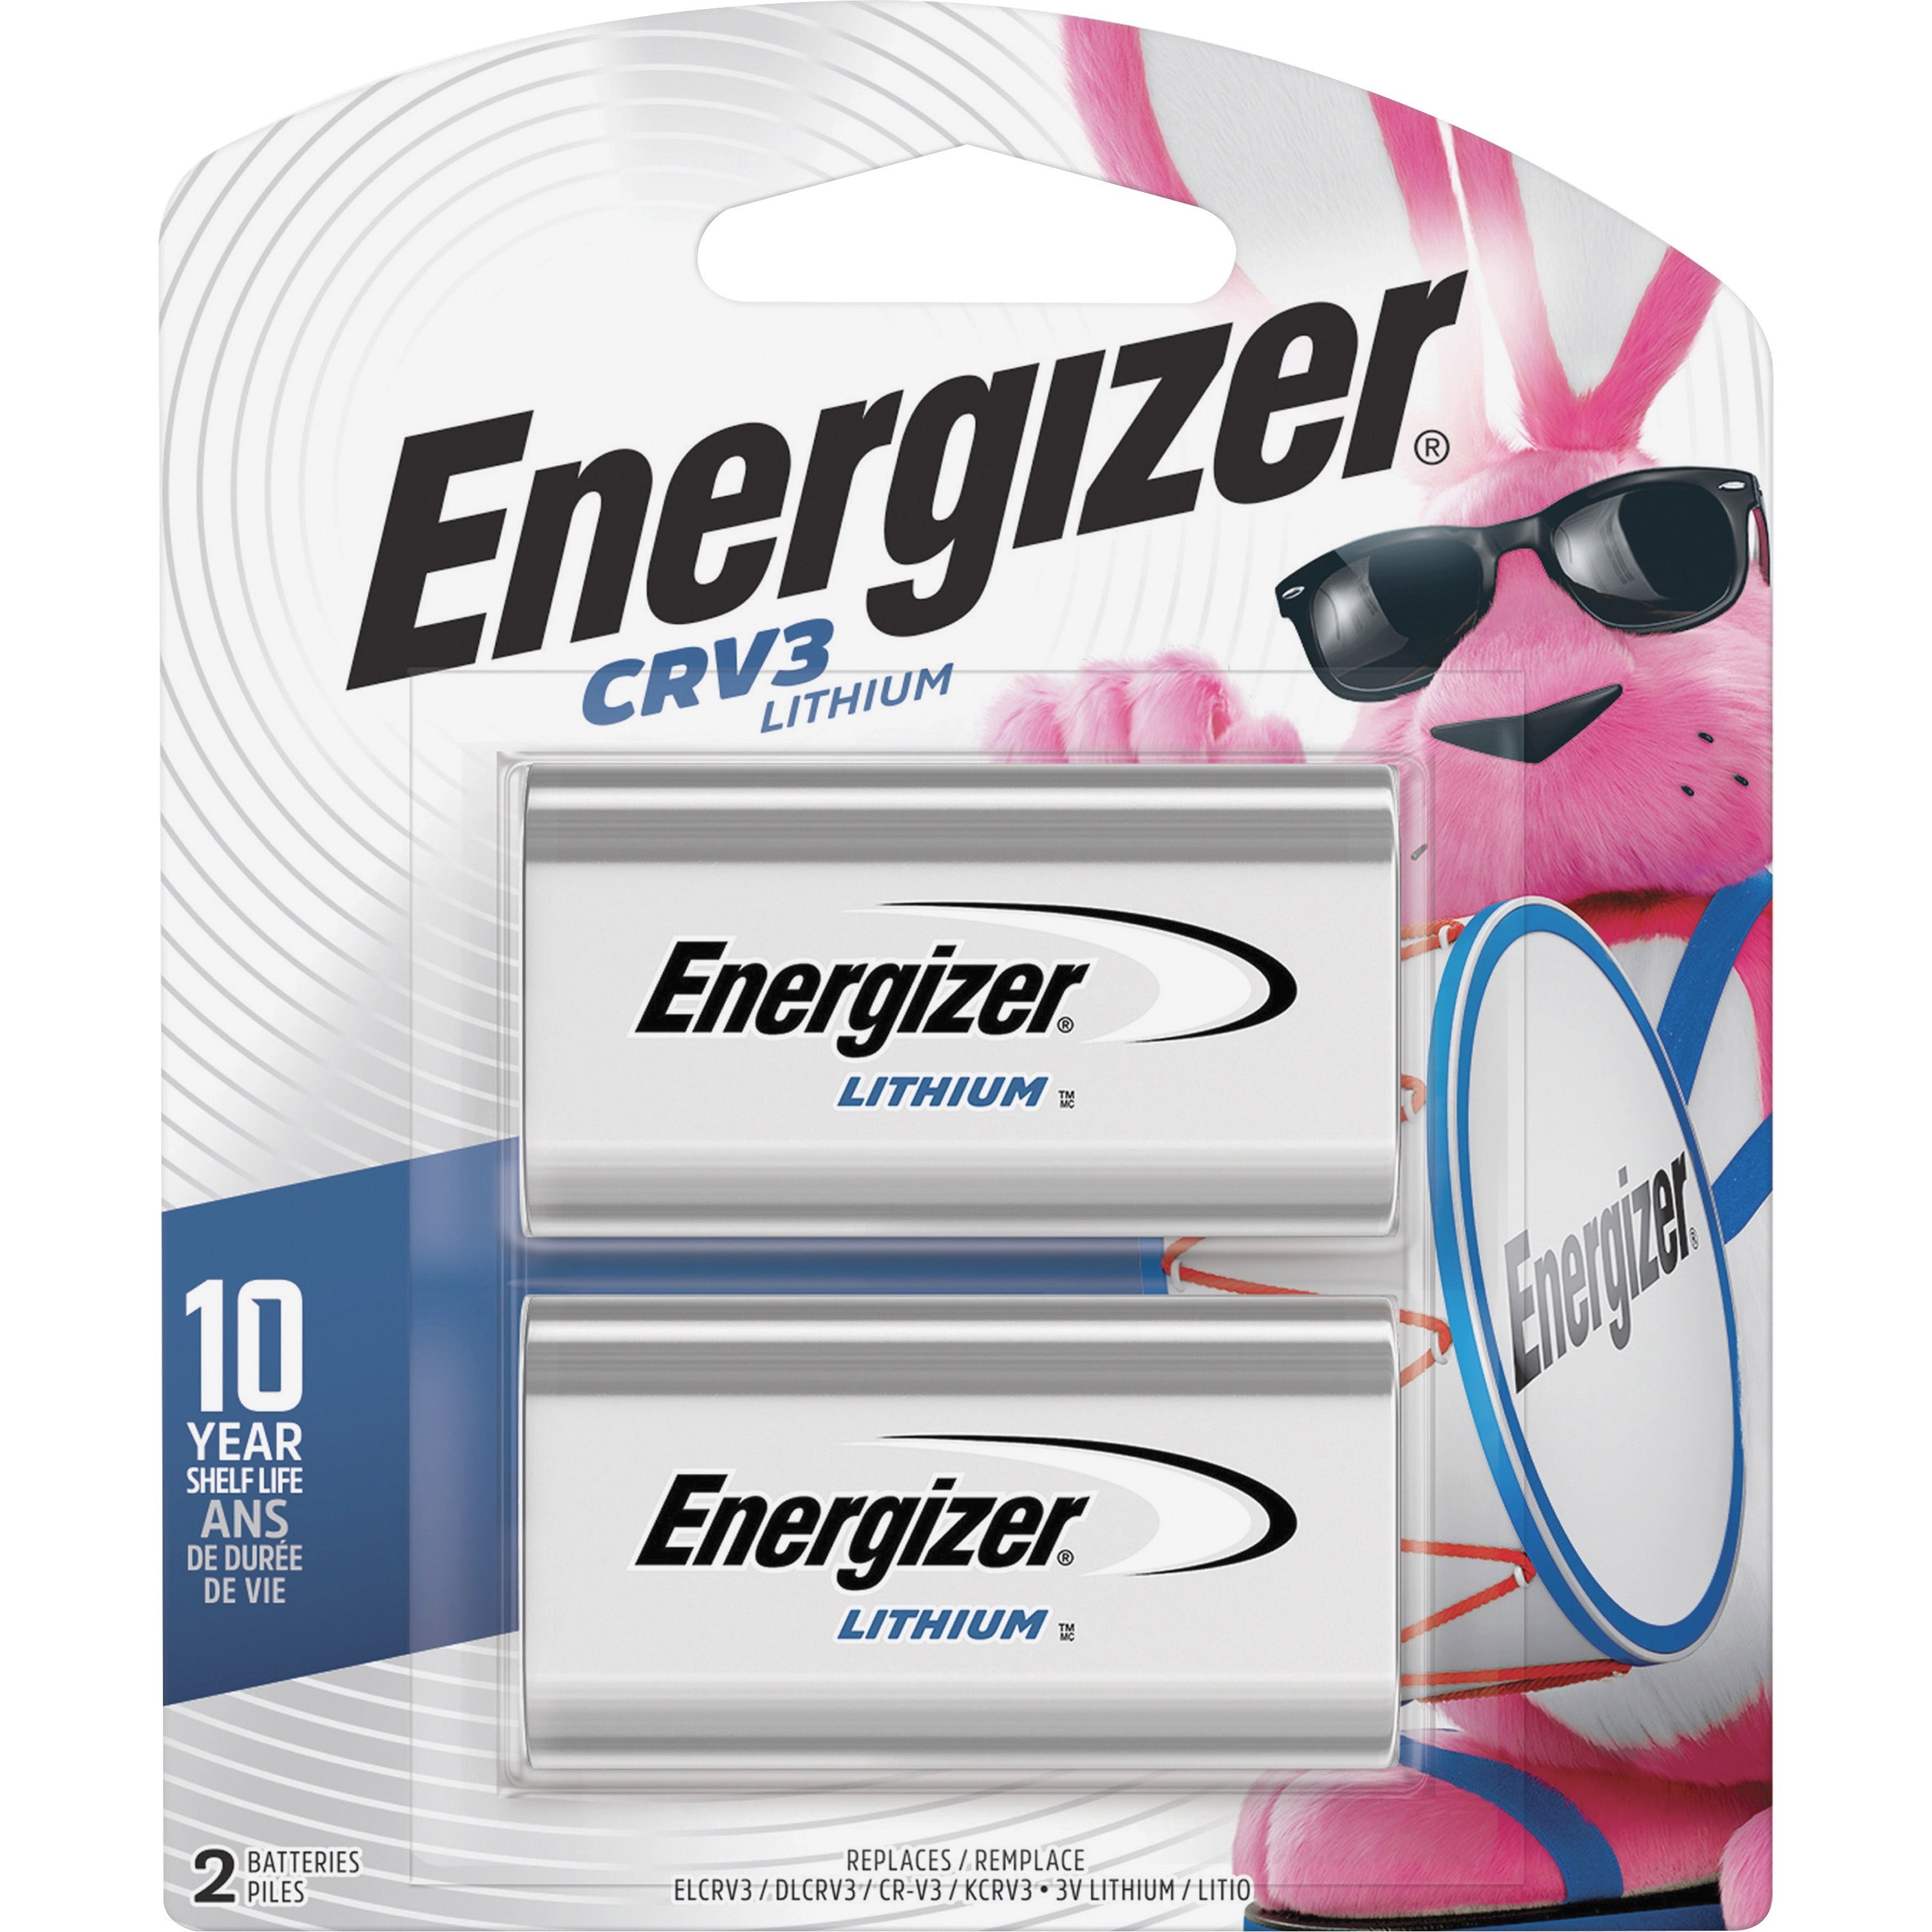 Energizer CRV3 Batteries, 2 Pack - For Multipurpose - 3 V DC - 3000 mAh - Lithium (Li) - 2 / Pack - 